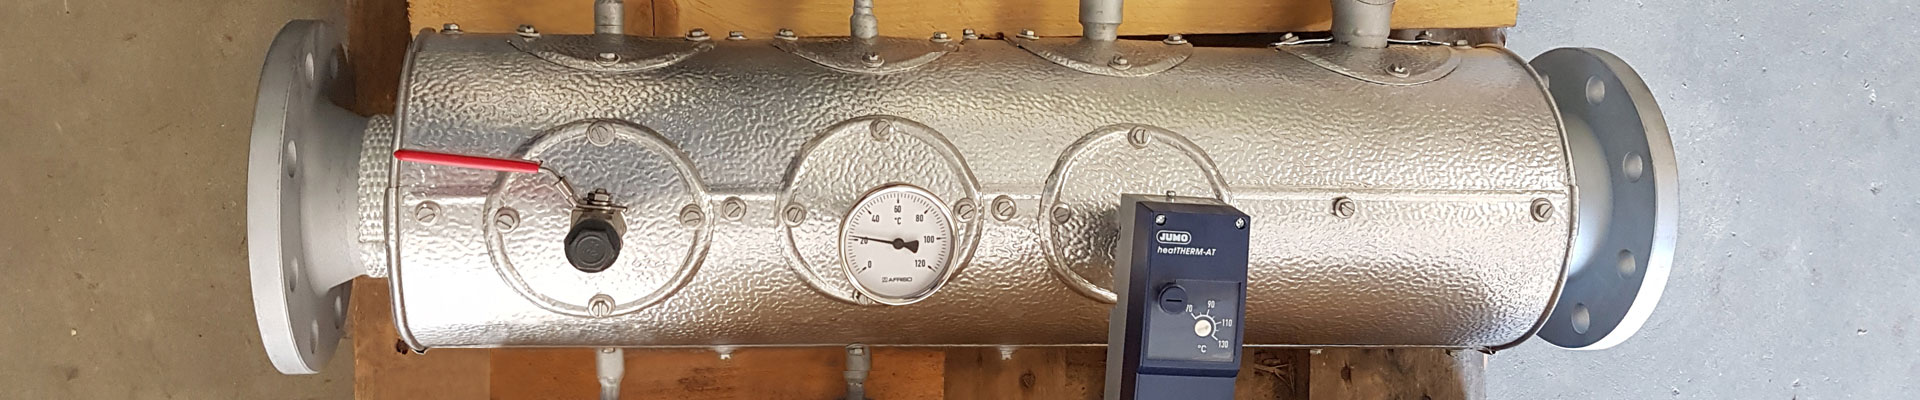 Steam boiler detail